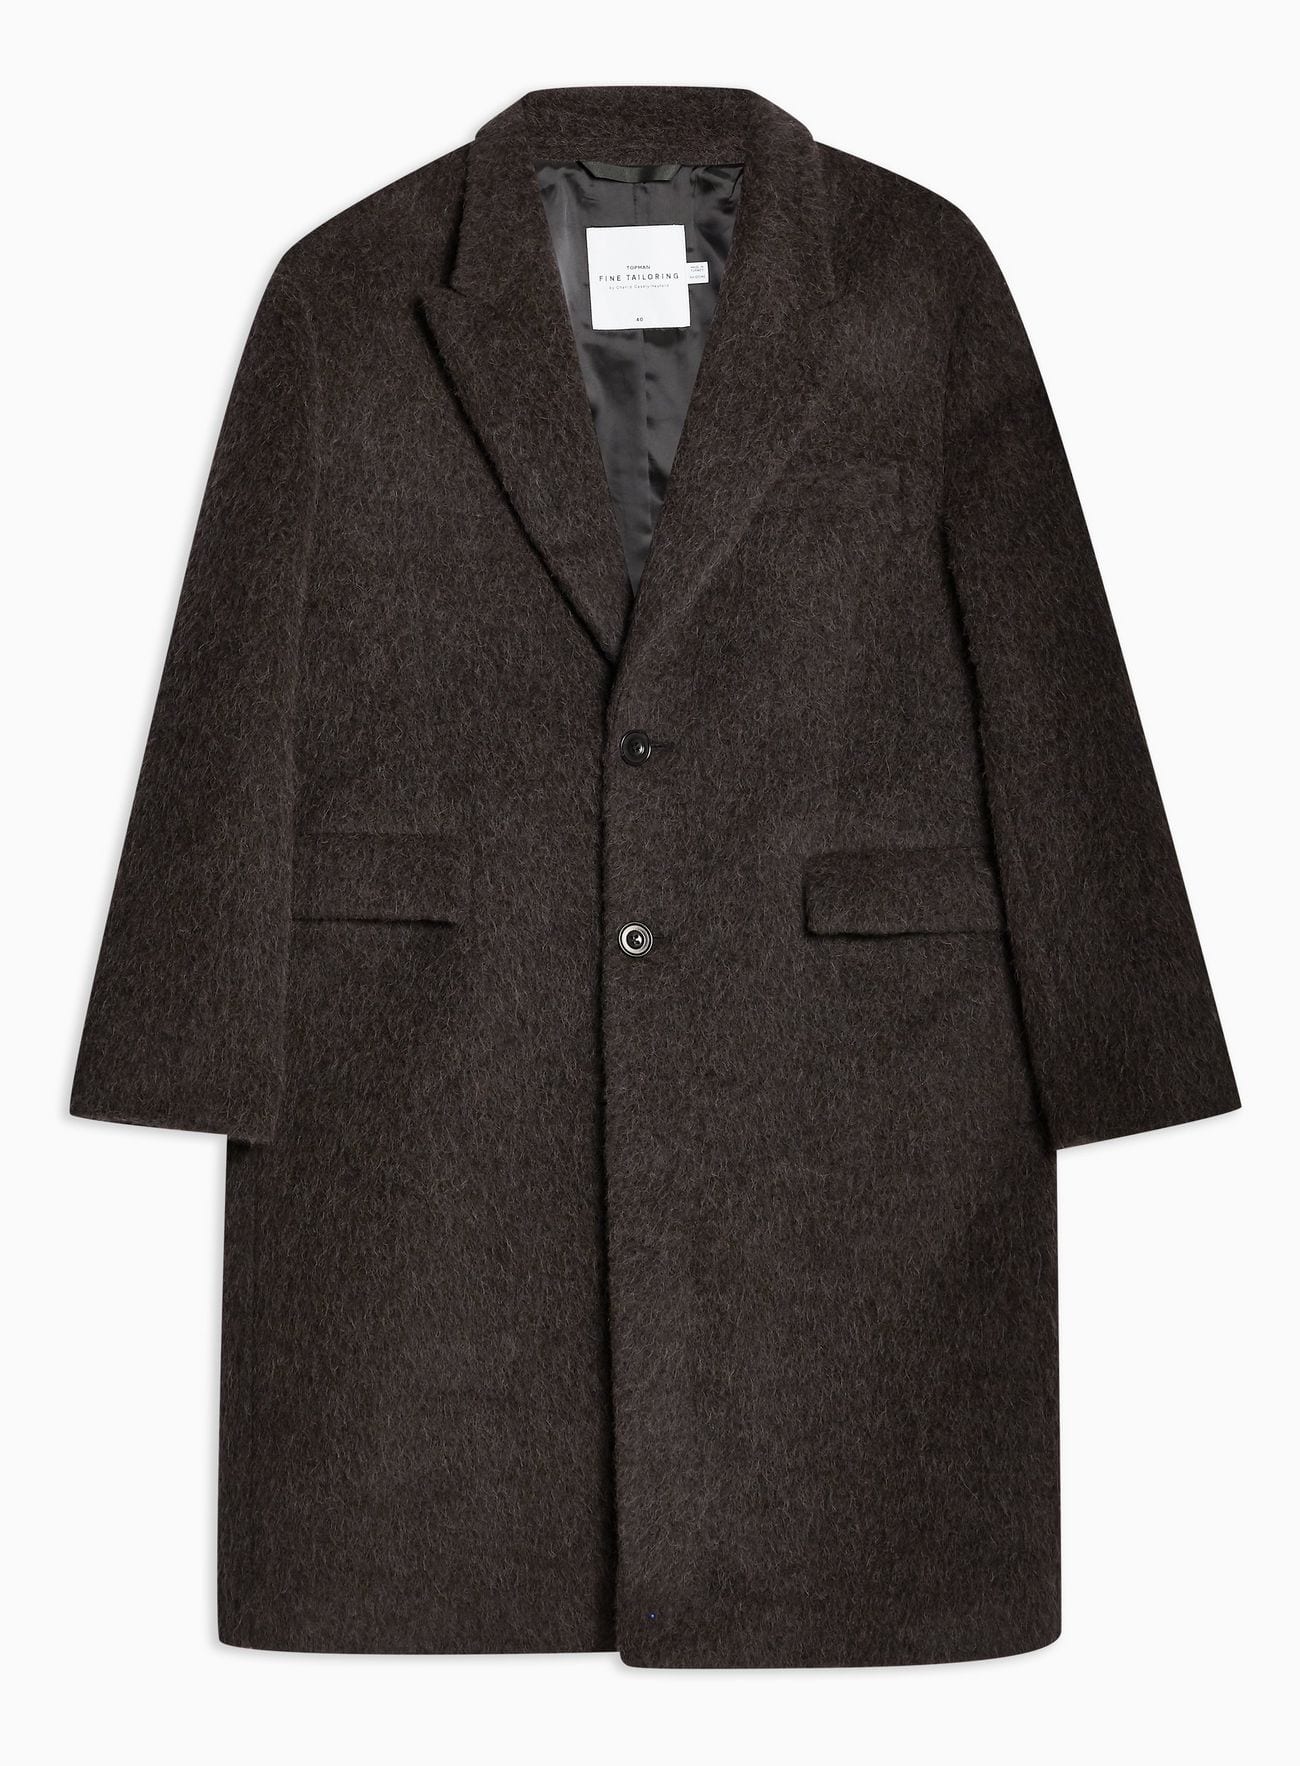 Men Long Coat Styles- 30 Best Outfits To Wear Long Down Coat